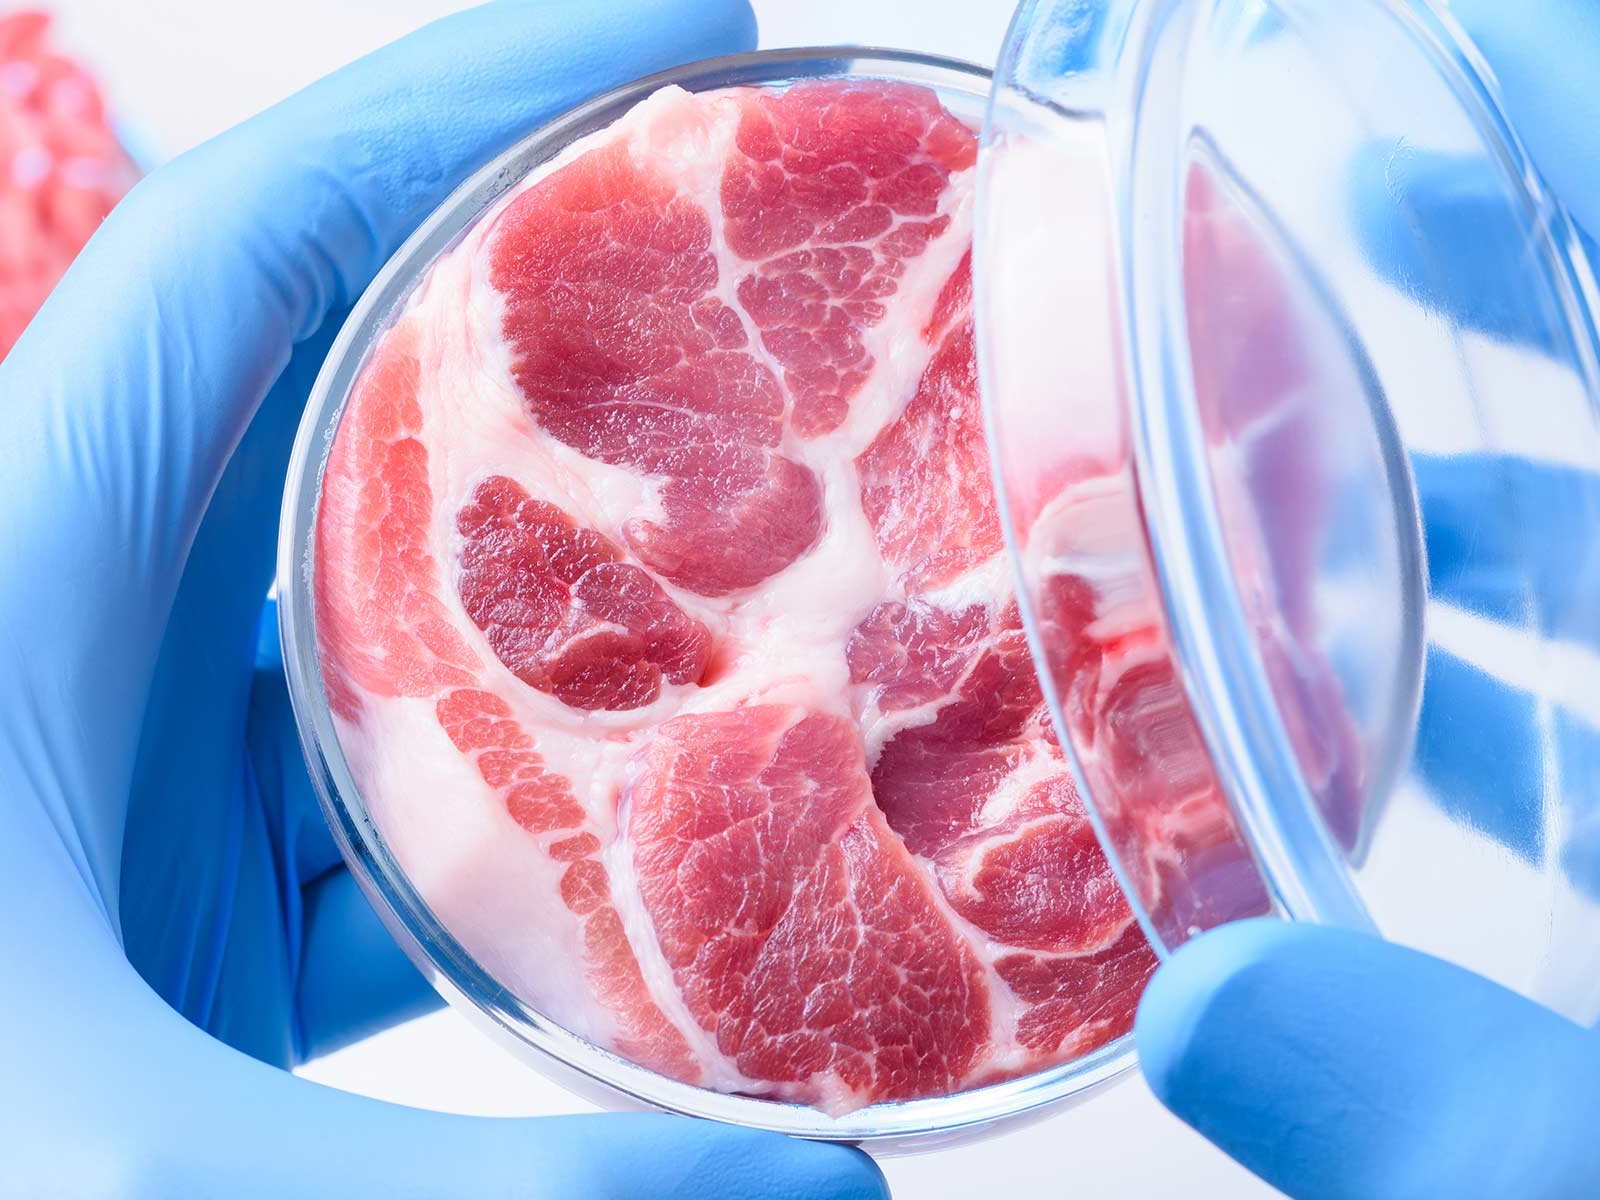 Fleisch aus dem Labor könnte in der Zukunft günstiger sein als jenes aus Massentierhaltung.